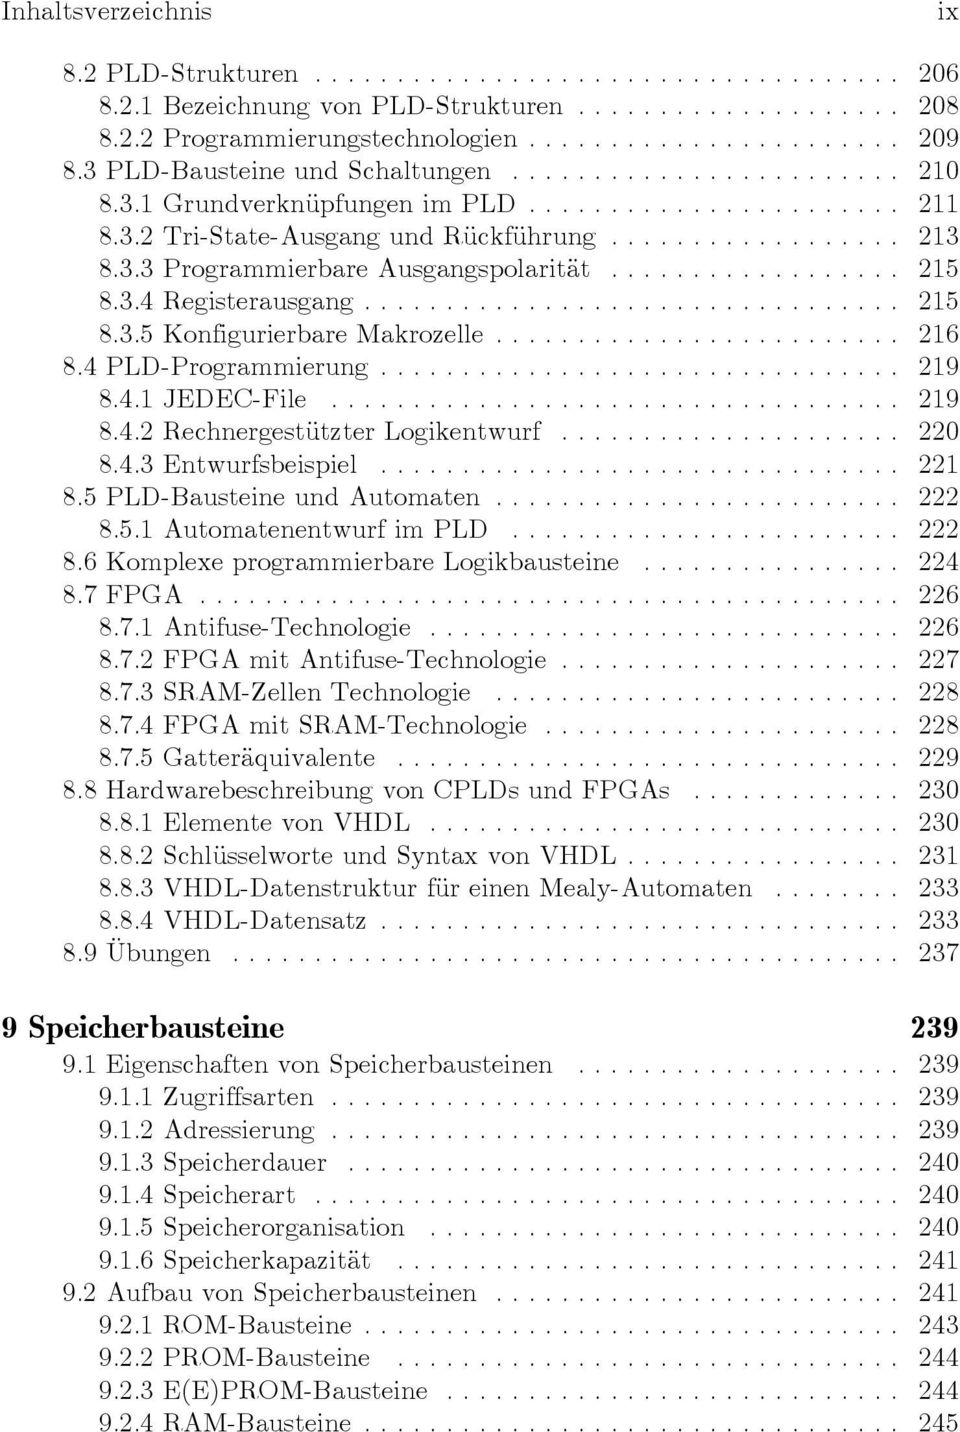 4.1 JEDEC-File... 219 8.4.2 Rechnergestützter Logikentwurf... 220 8.4.3 Entwurfsbeispiel... 221 8.5 PLD-Bausteine und Automaten... 222 8.5.1 Automatenentwurf im PLD... 222 8.6 Komplexe programmierbare Logikbausteine.